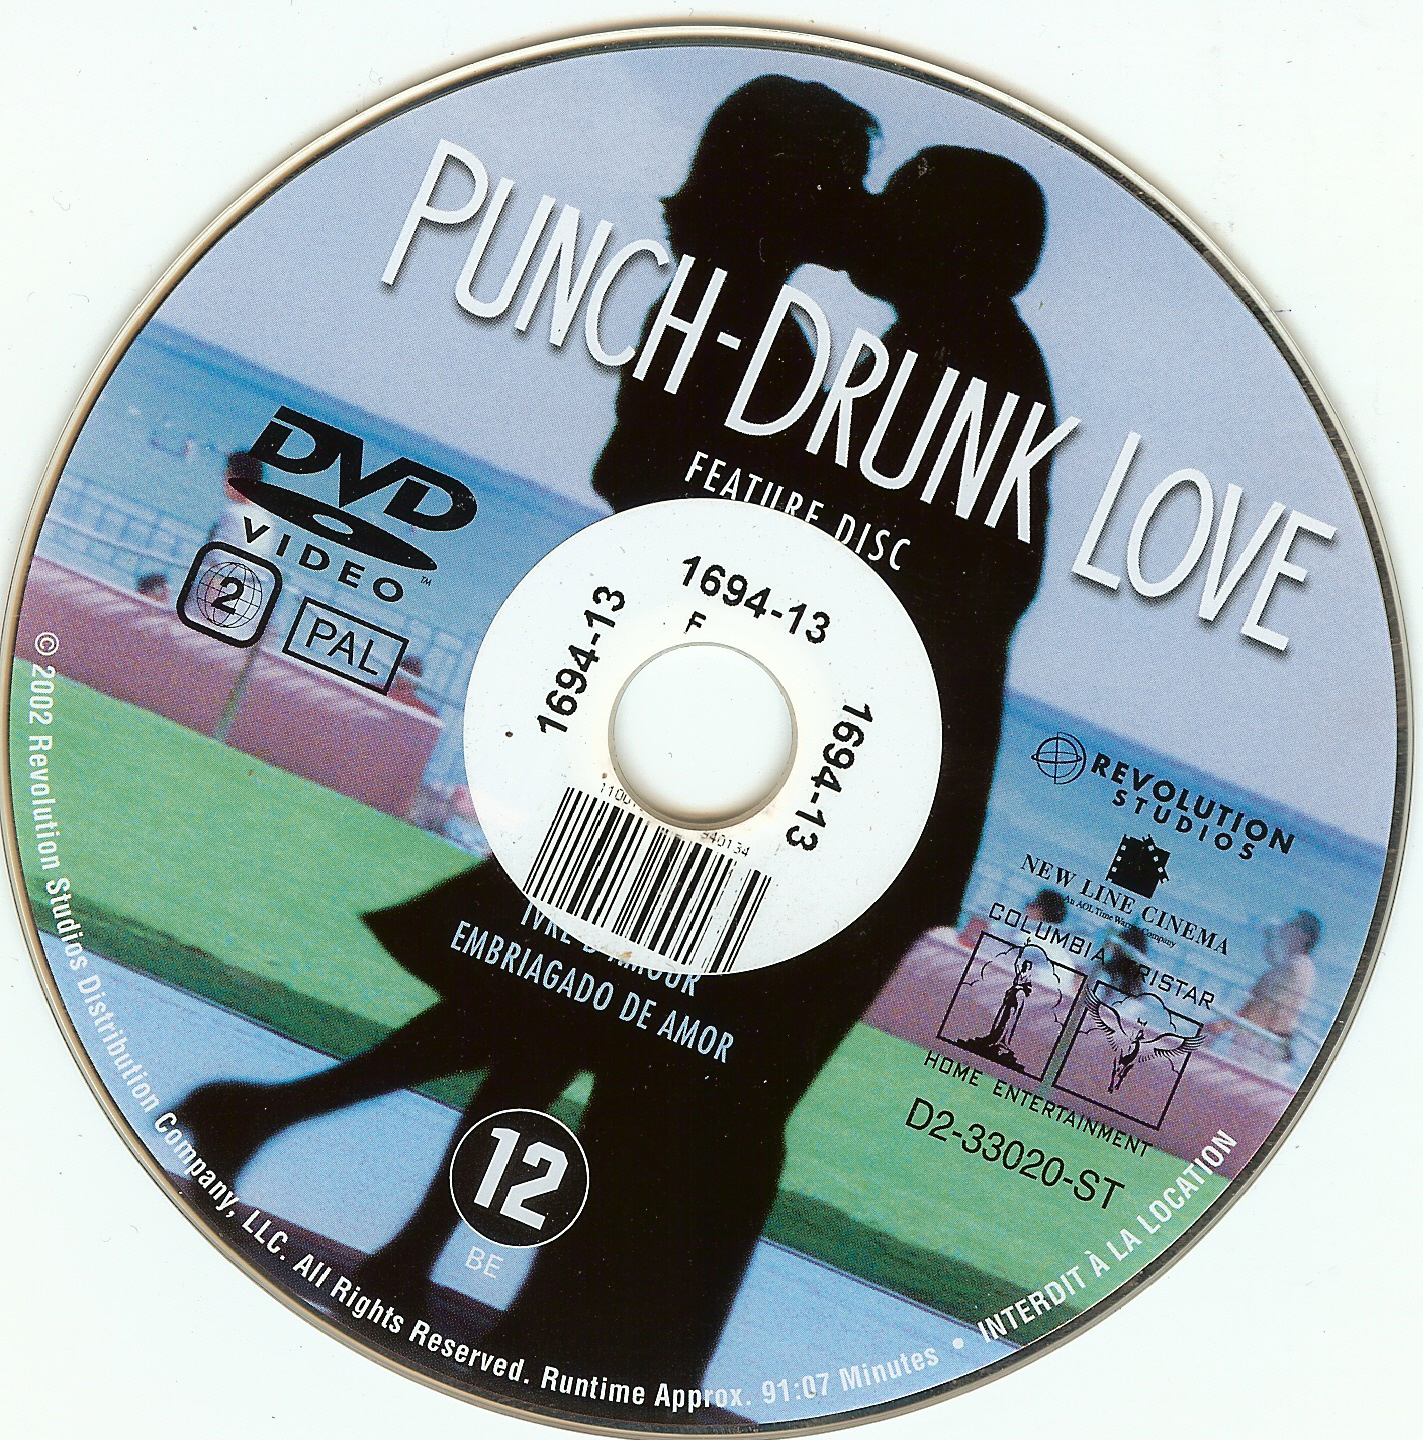 Punch Drunk Love